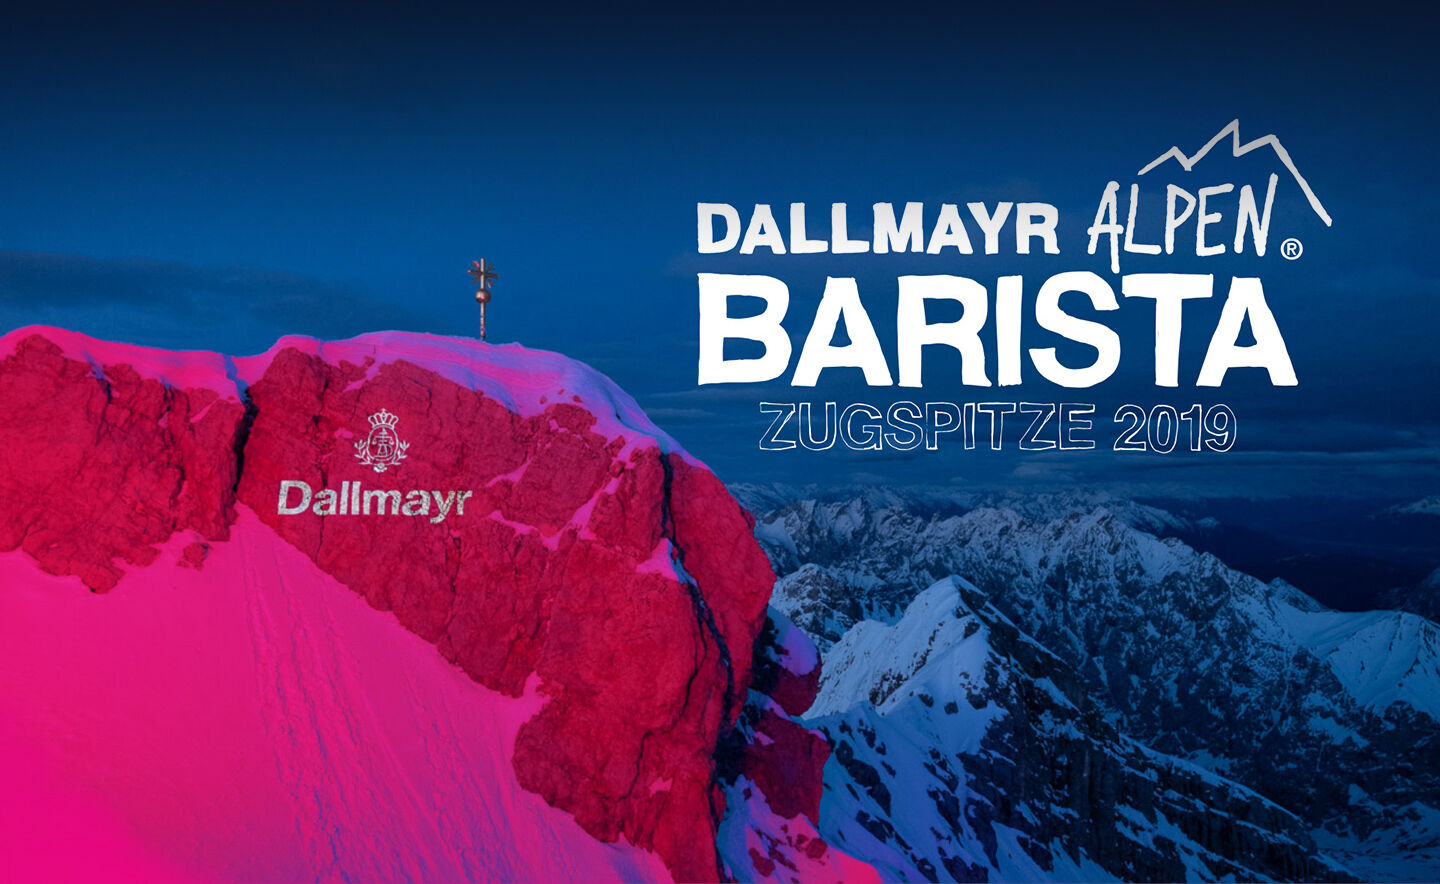 Pink beleuchtete Zugspitze mit Dallmayr Logo für Alpenbarista 2019